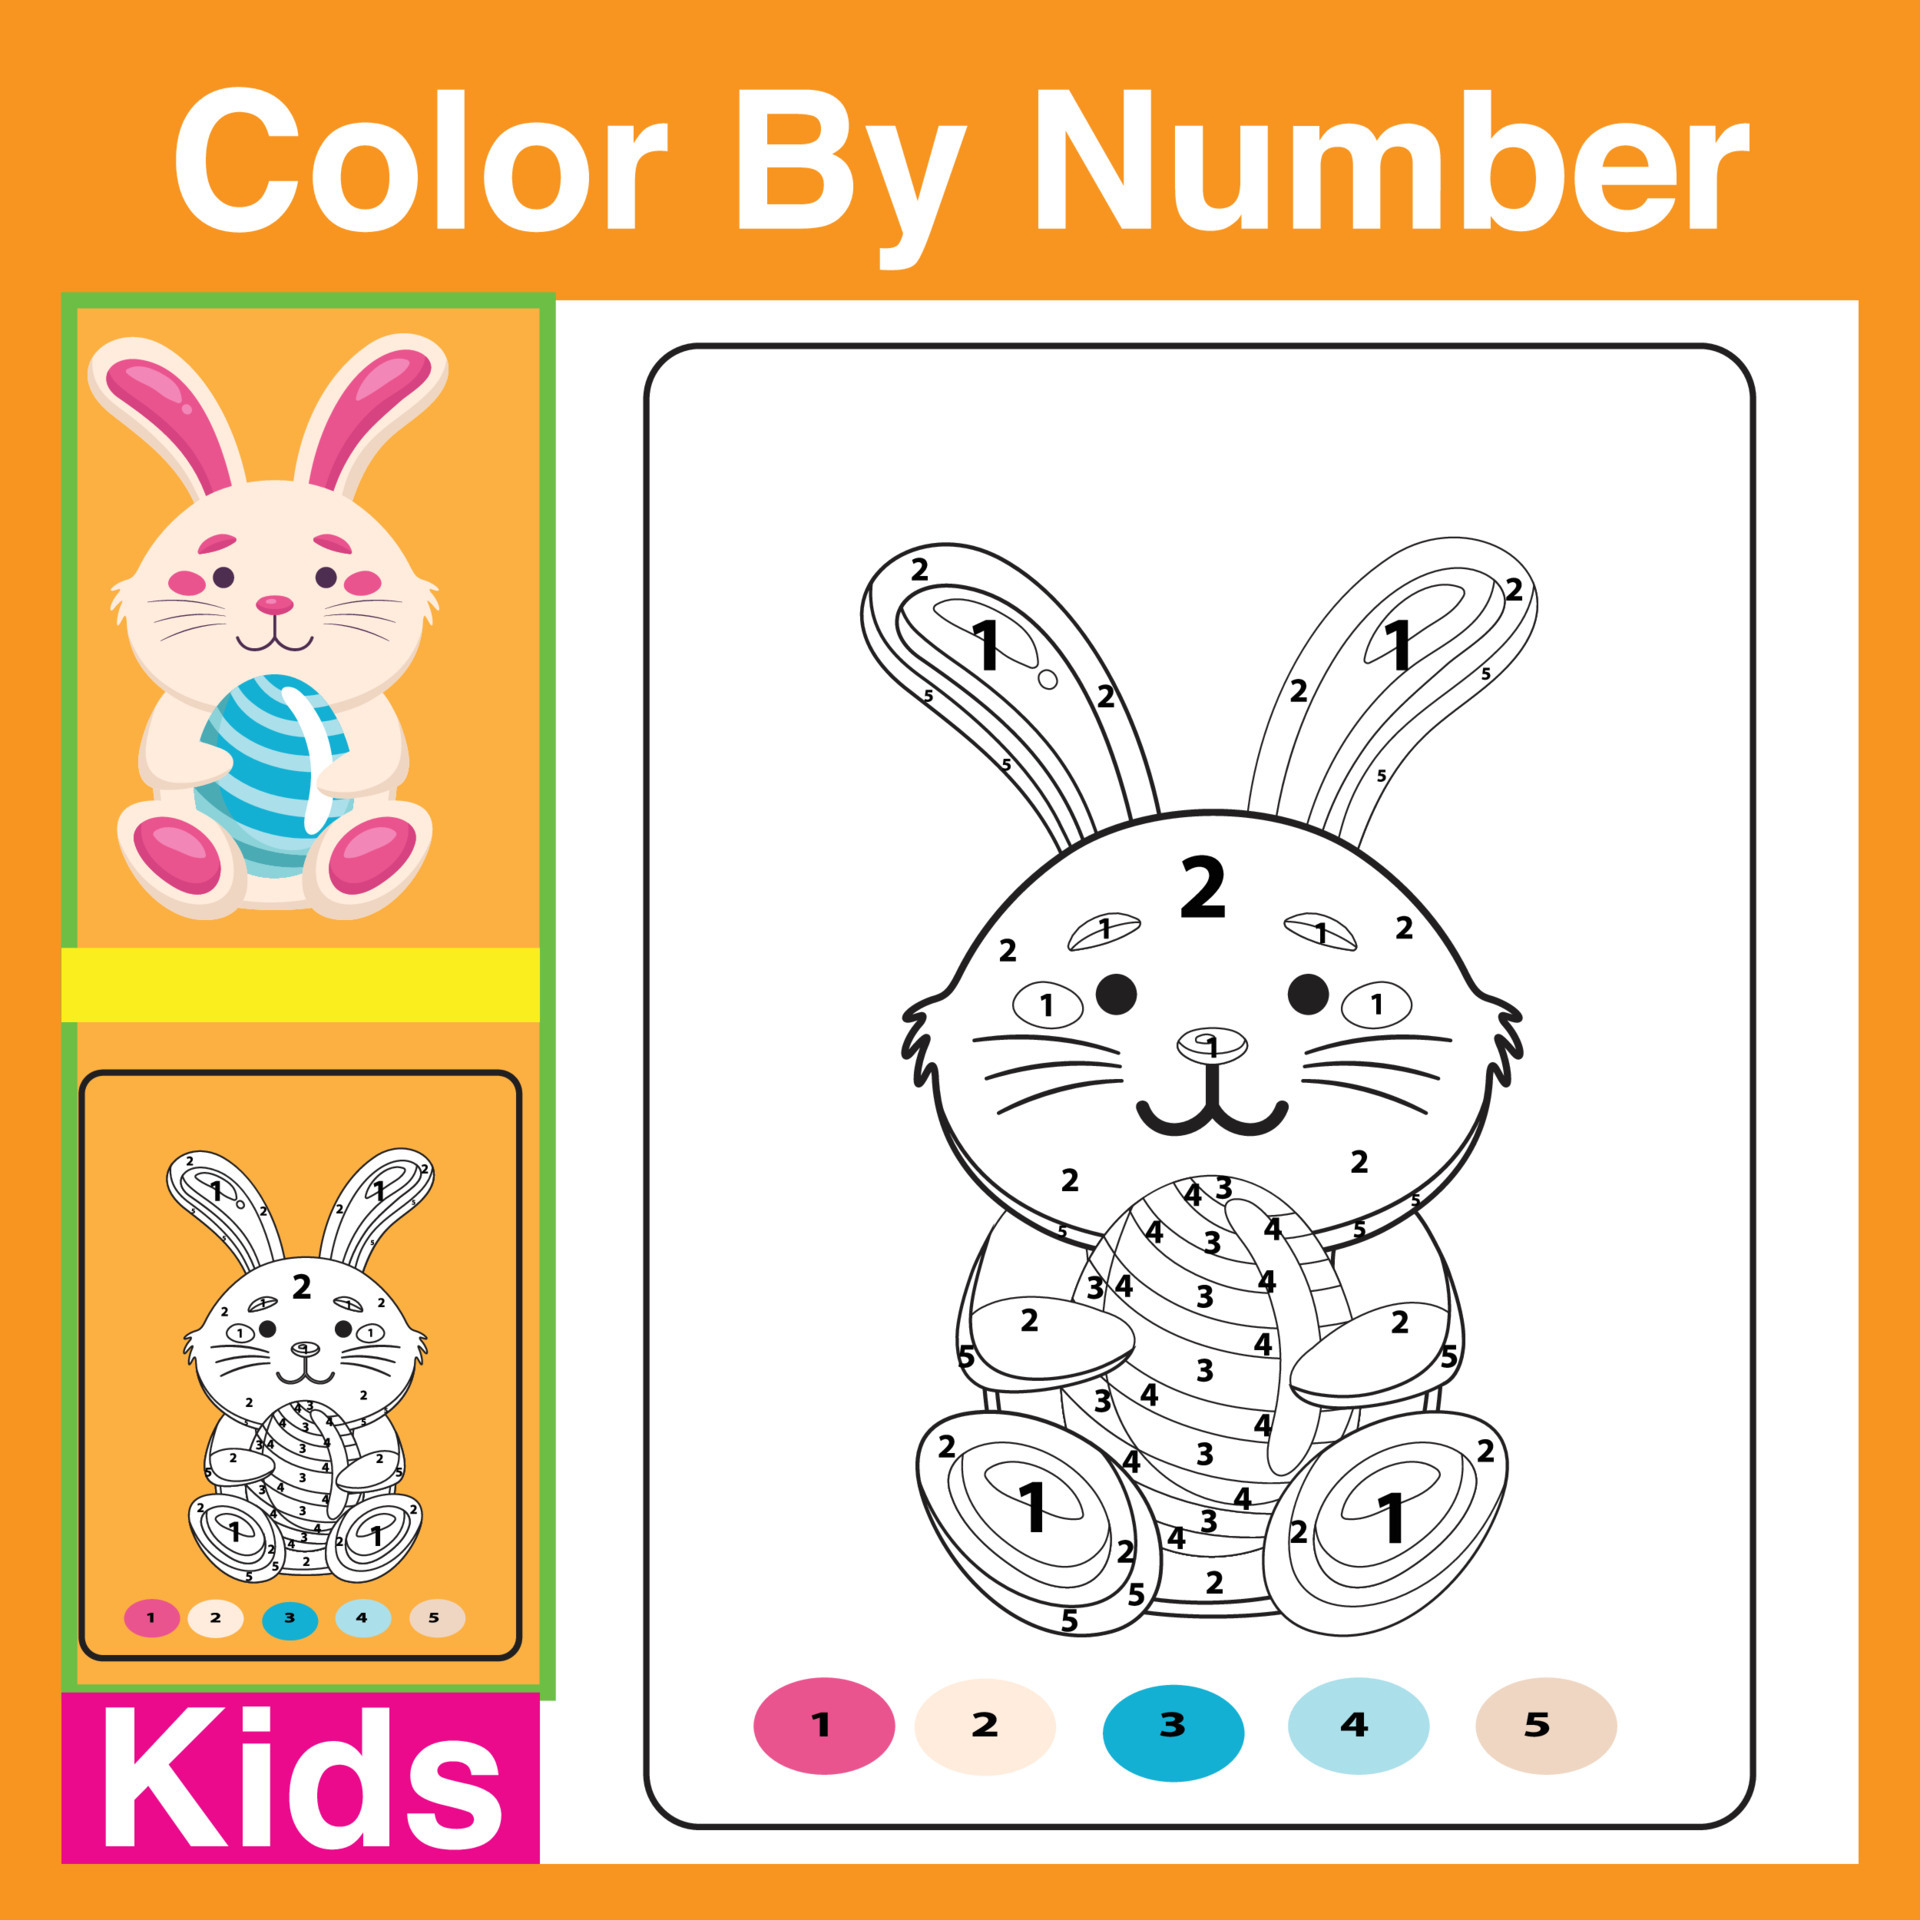 imprimir livro de colorir de coelho de desenho animado bonito para  crianças. colorir por números é